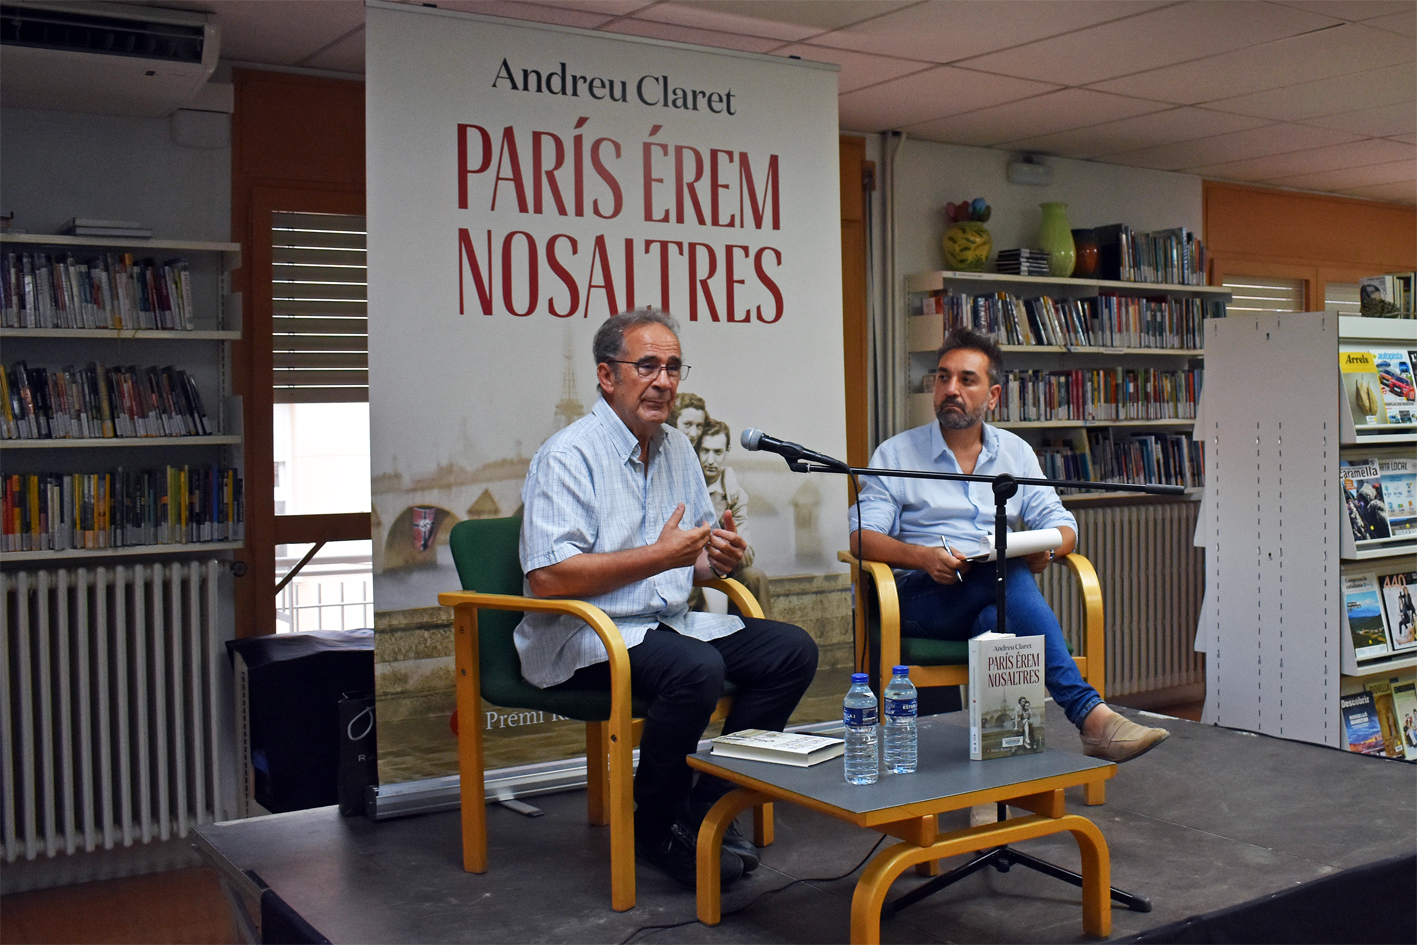 La Biblioteca Pública s'omple en la tertúlia del Club de Lectura amb Andreu Claret sobre la seva novel·la 'París érem nosaltres'